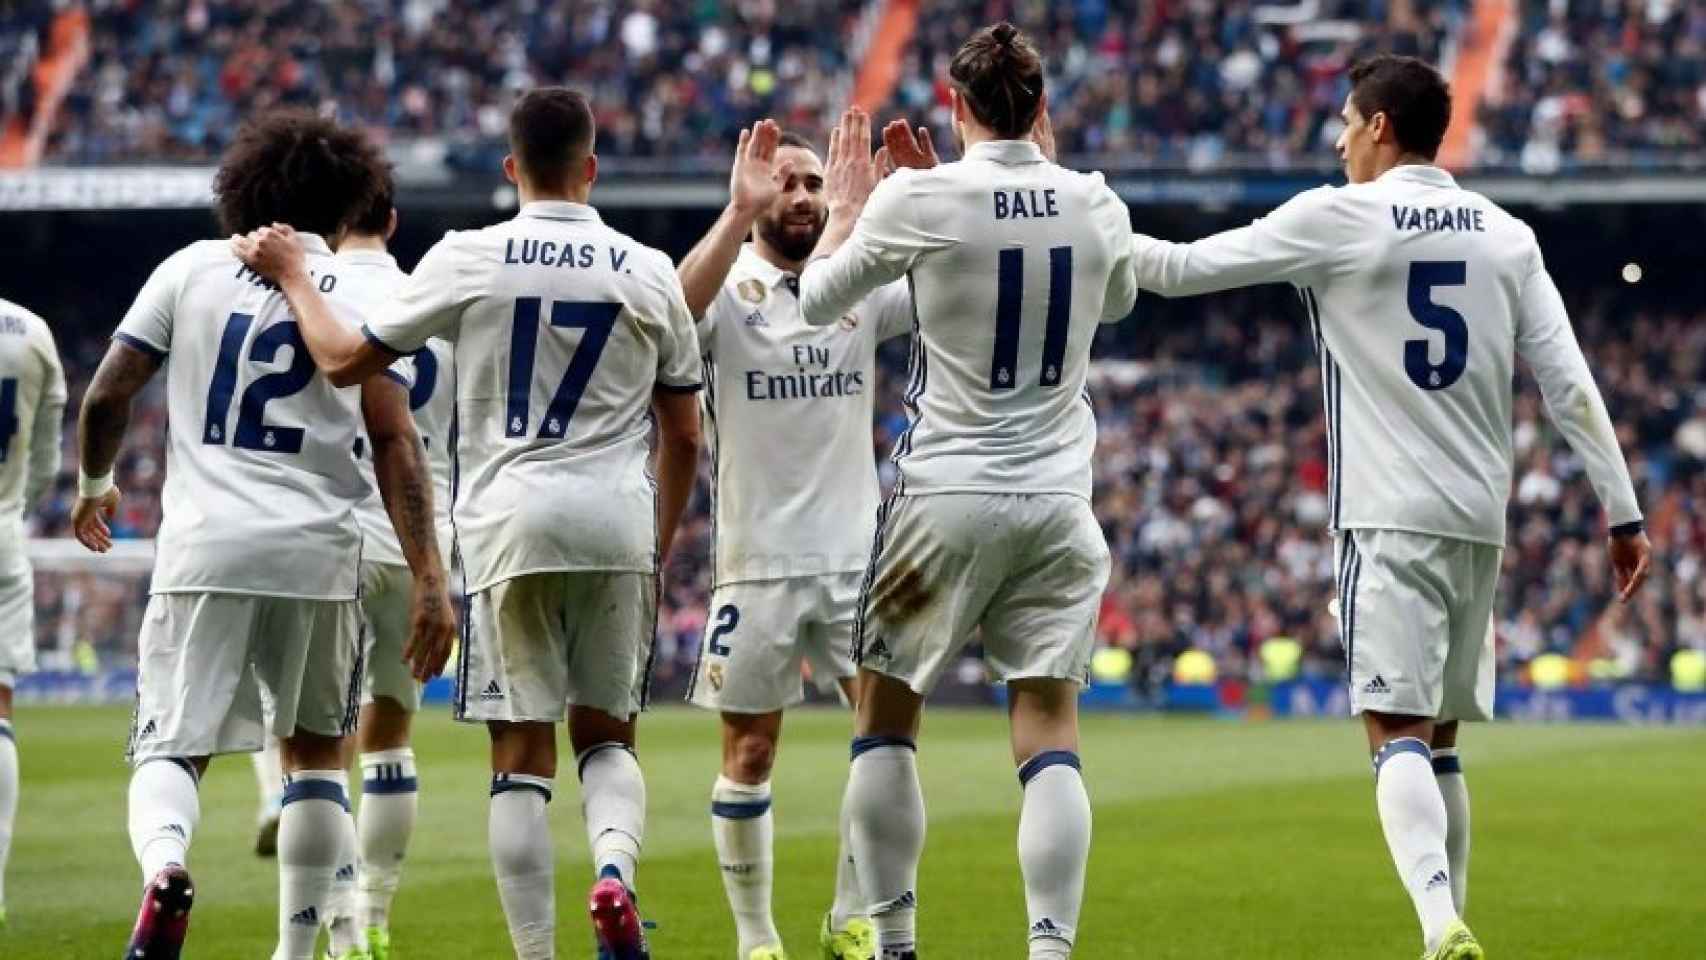 El Real Madrid celebra el gol de Bale